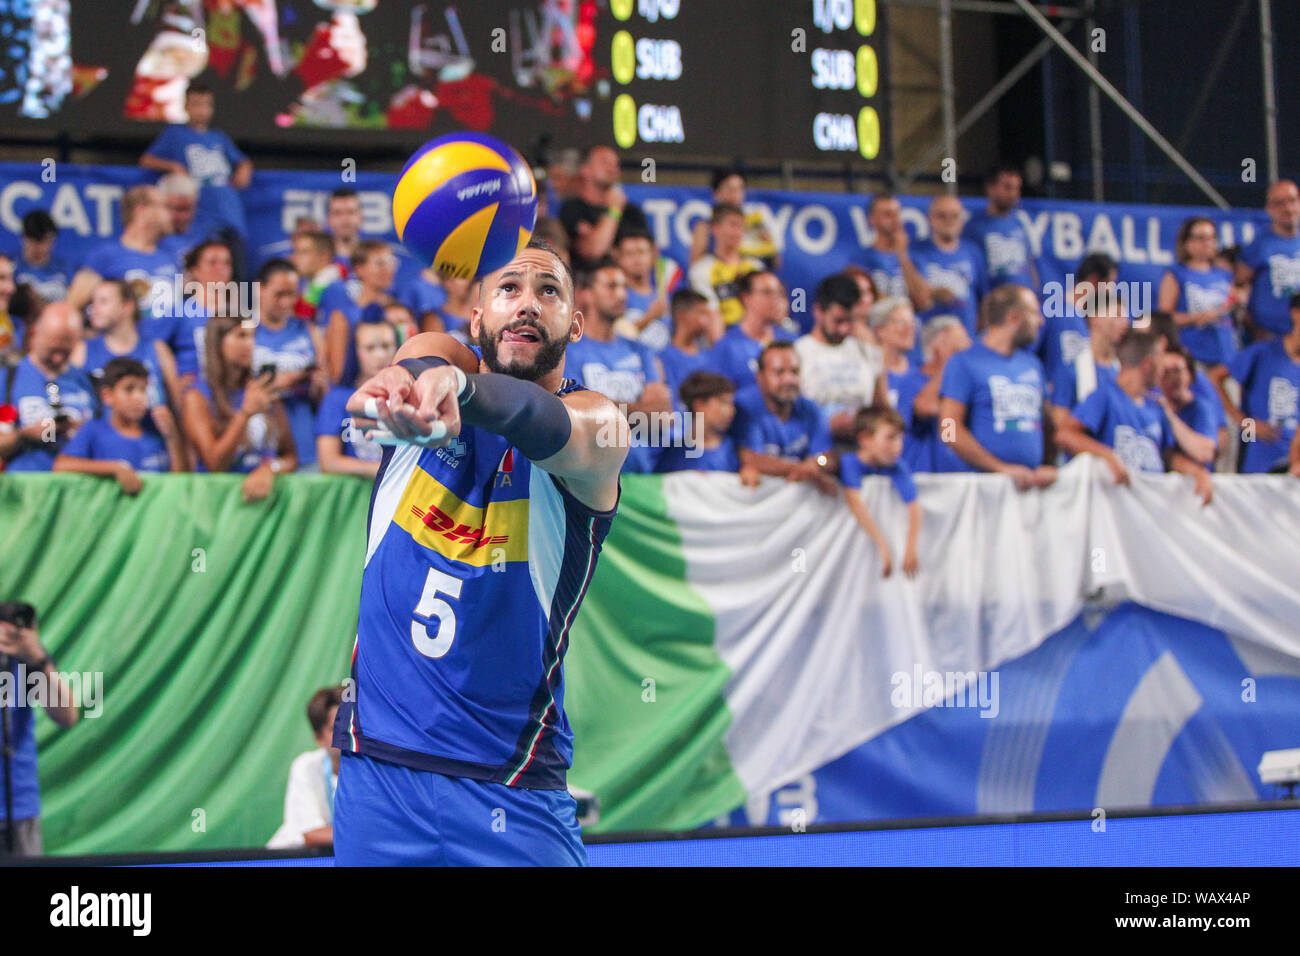 Osmani Juantorena during Torneo Maschile di qualificazione a Tokyo 2020 - Day 1 - Italia vs Camerun, Bari, Italy, 09 Aug 2019, Volley Nazionale Italia Stock Photo